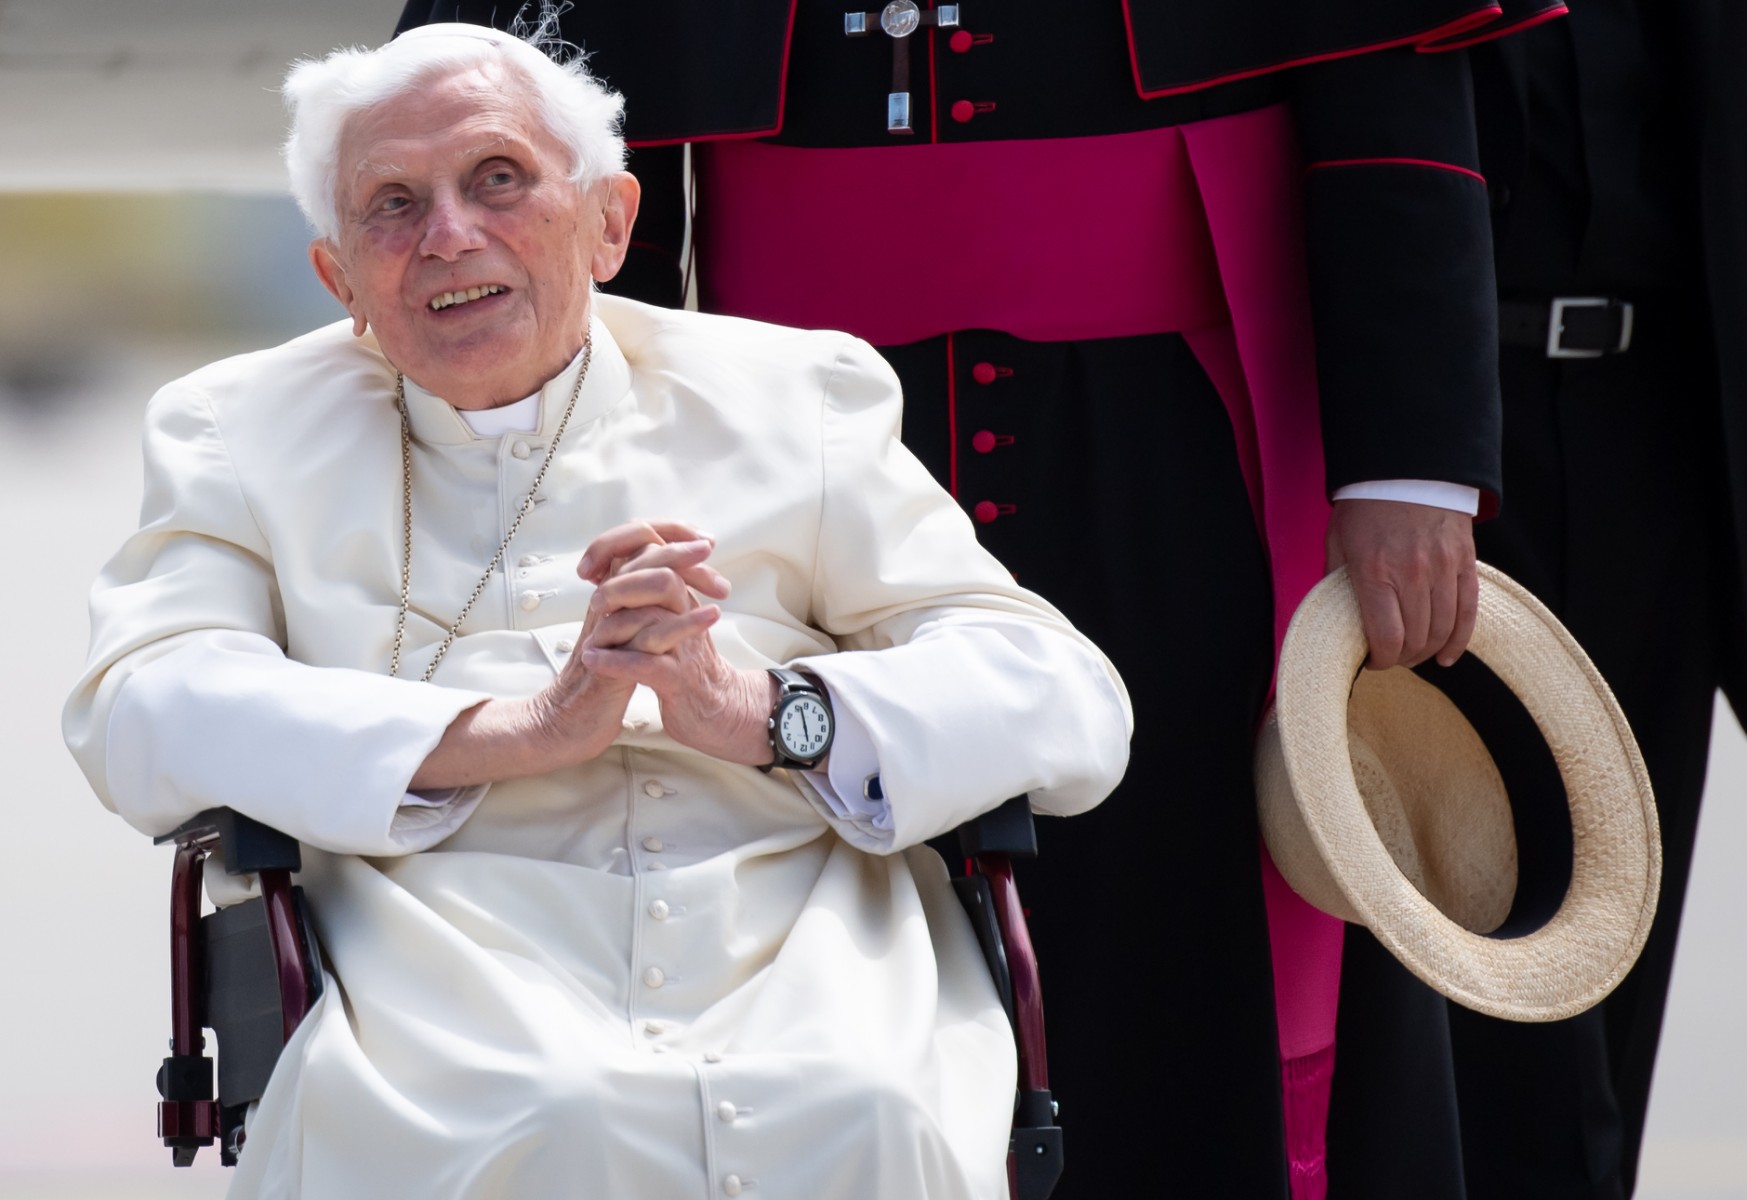 Ex-pope Benedict's health worsening, says Vatican